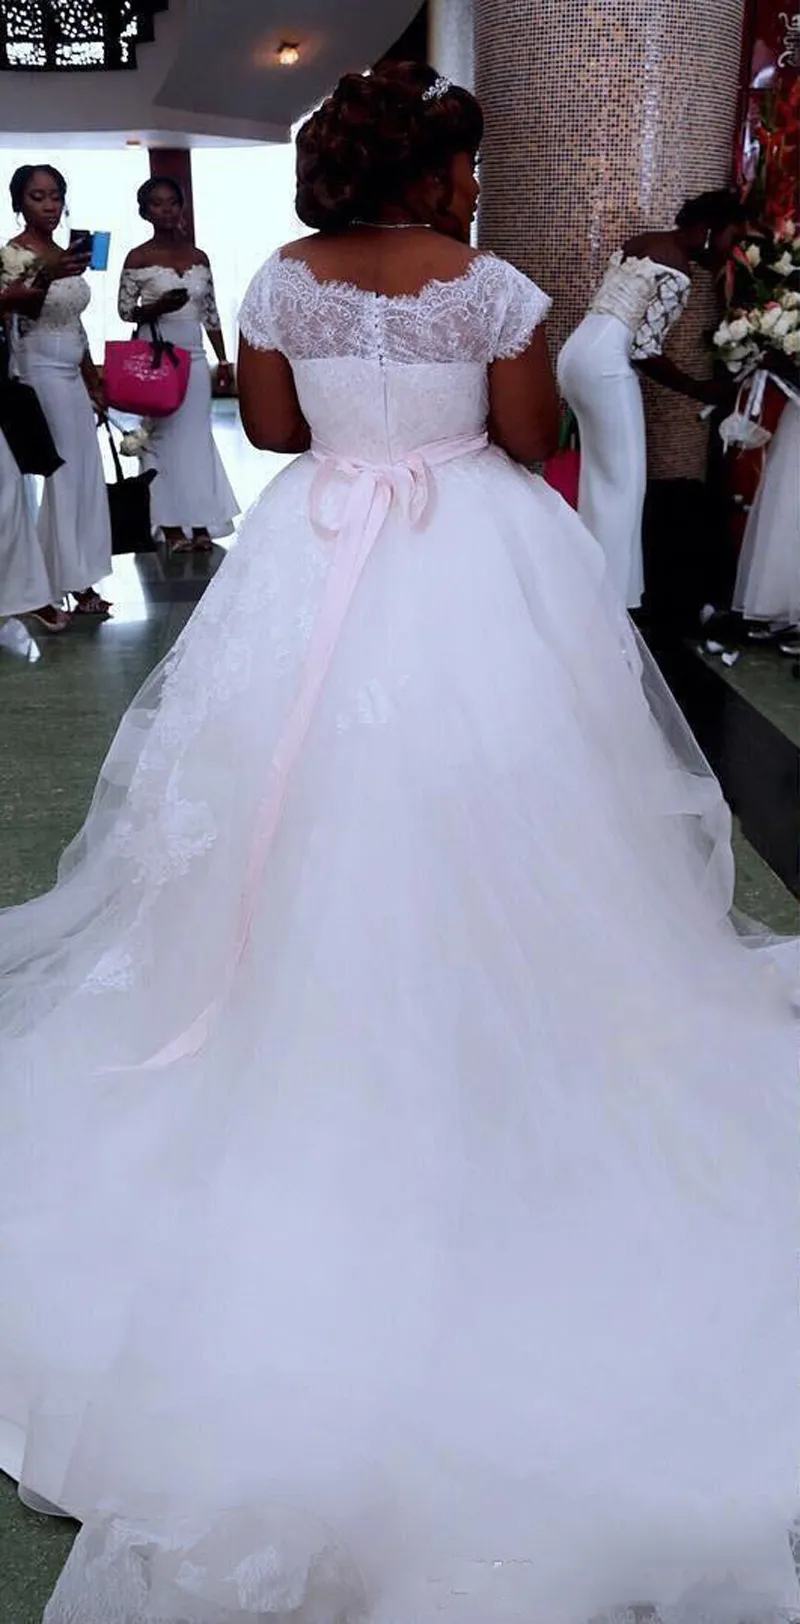 2017 плюс размер дешевые пляж свадебные платья Cap рукавом суд поезд с розовым поясом покрыты кнопки ретро свадебные платья Vestido де Novia